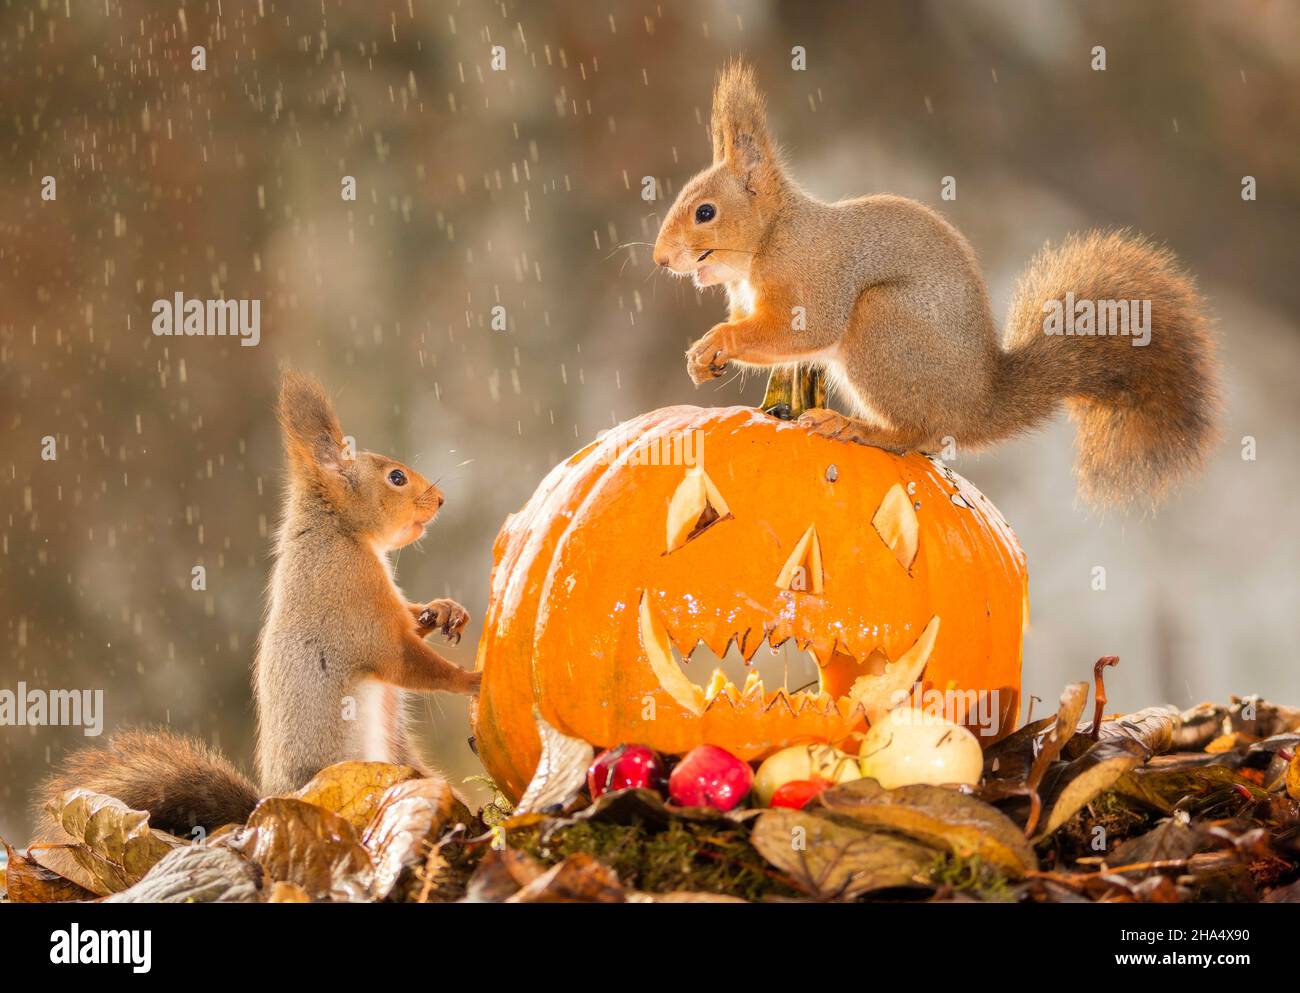 Écureuil rouge debout sur une tête de citrouille un autre regarder pendant qu'il pleut Banque D'Images